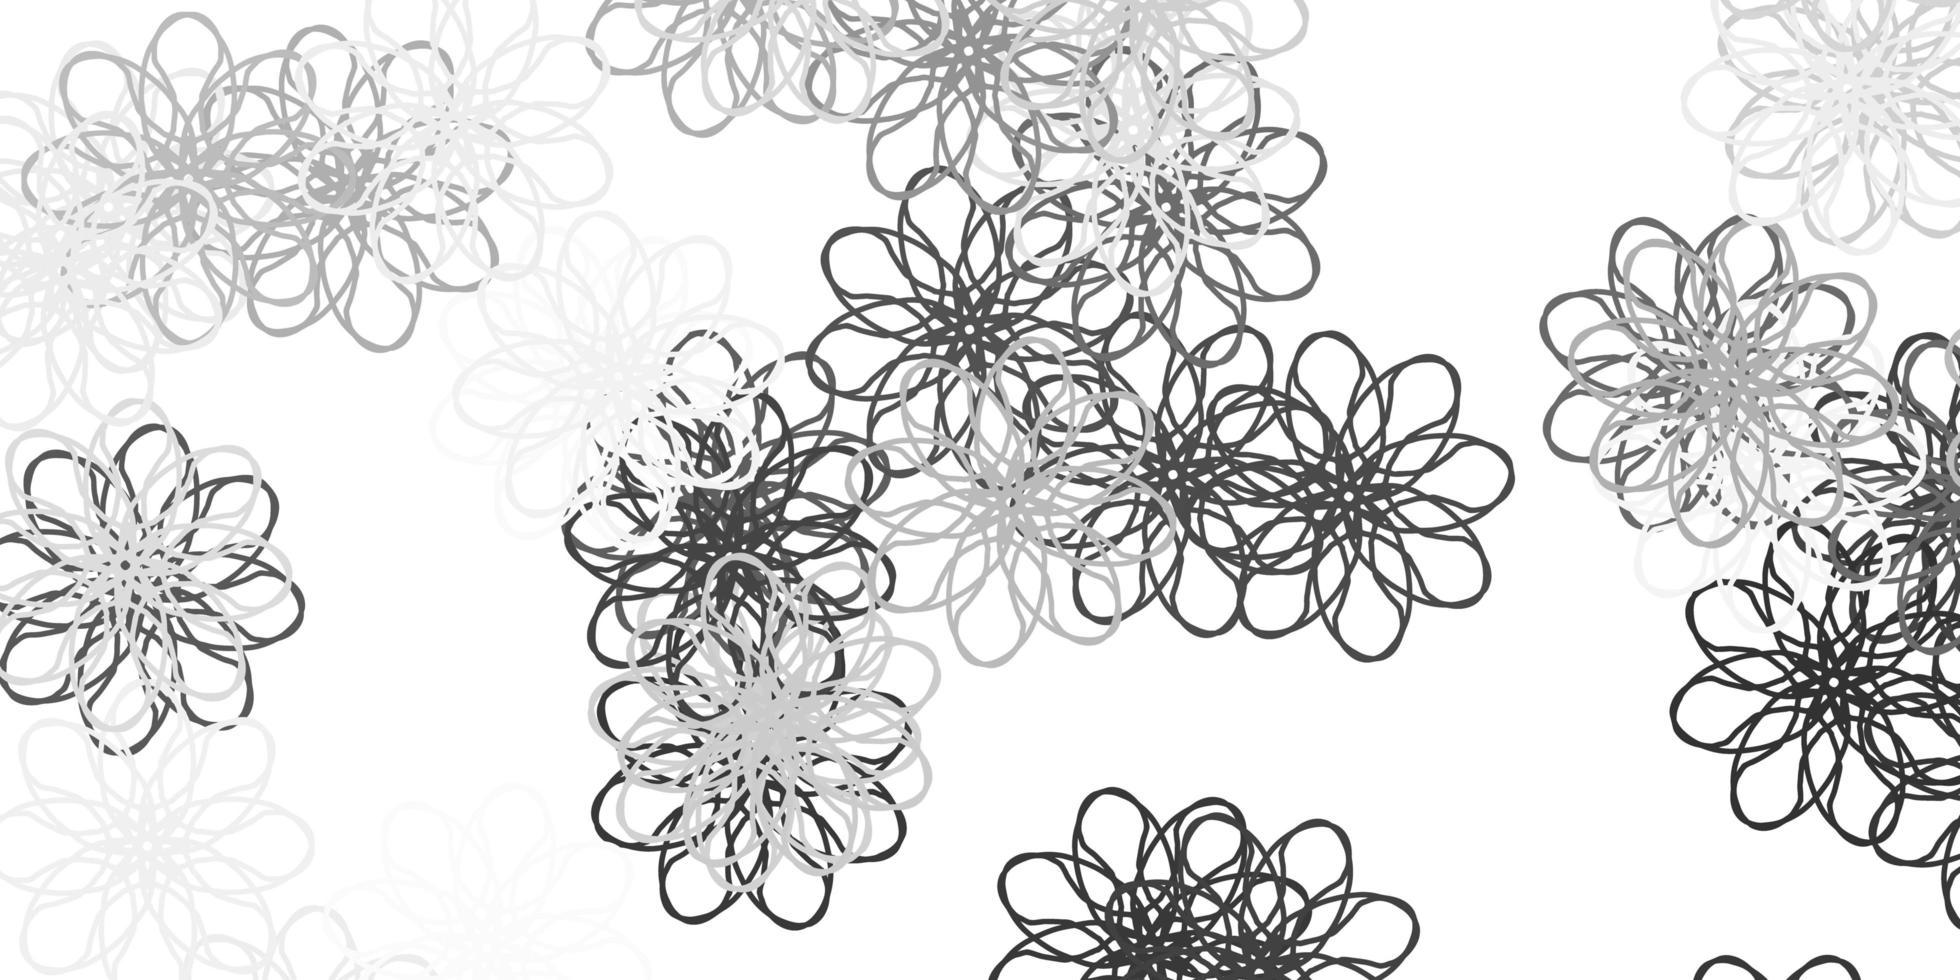 struttura di doodle di vettore grigio chiaro con fiori.